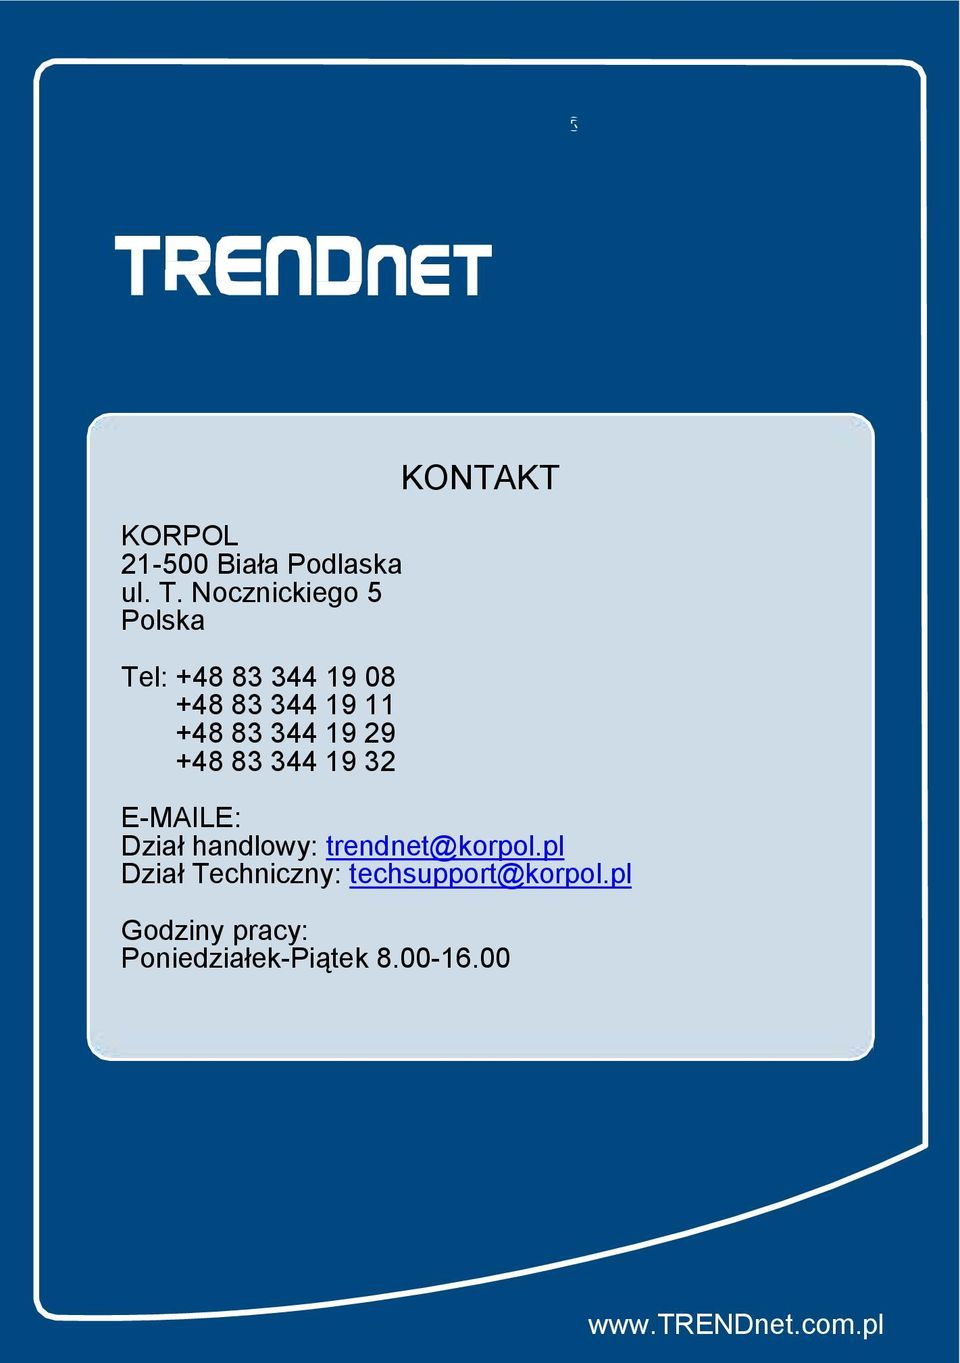 19 29 +48 83 344 19 32 KONTAKT E-MAILE: Dział handlowy: trendnet@korpol.